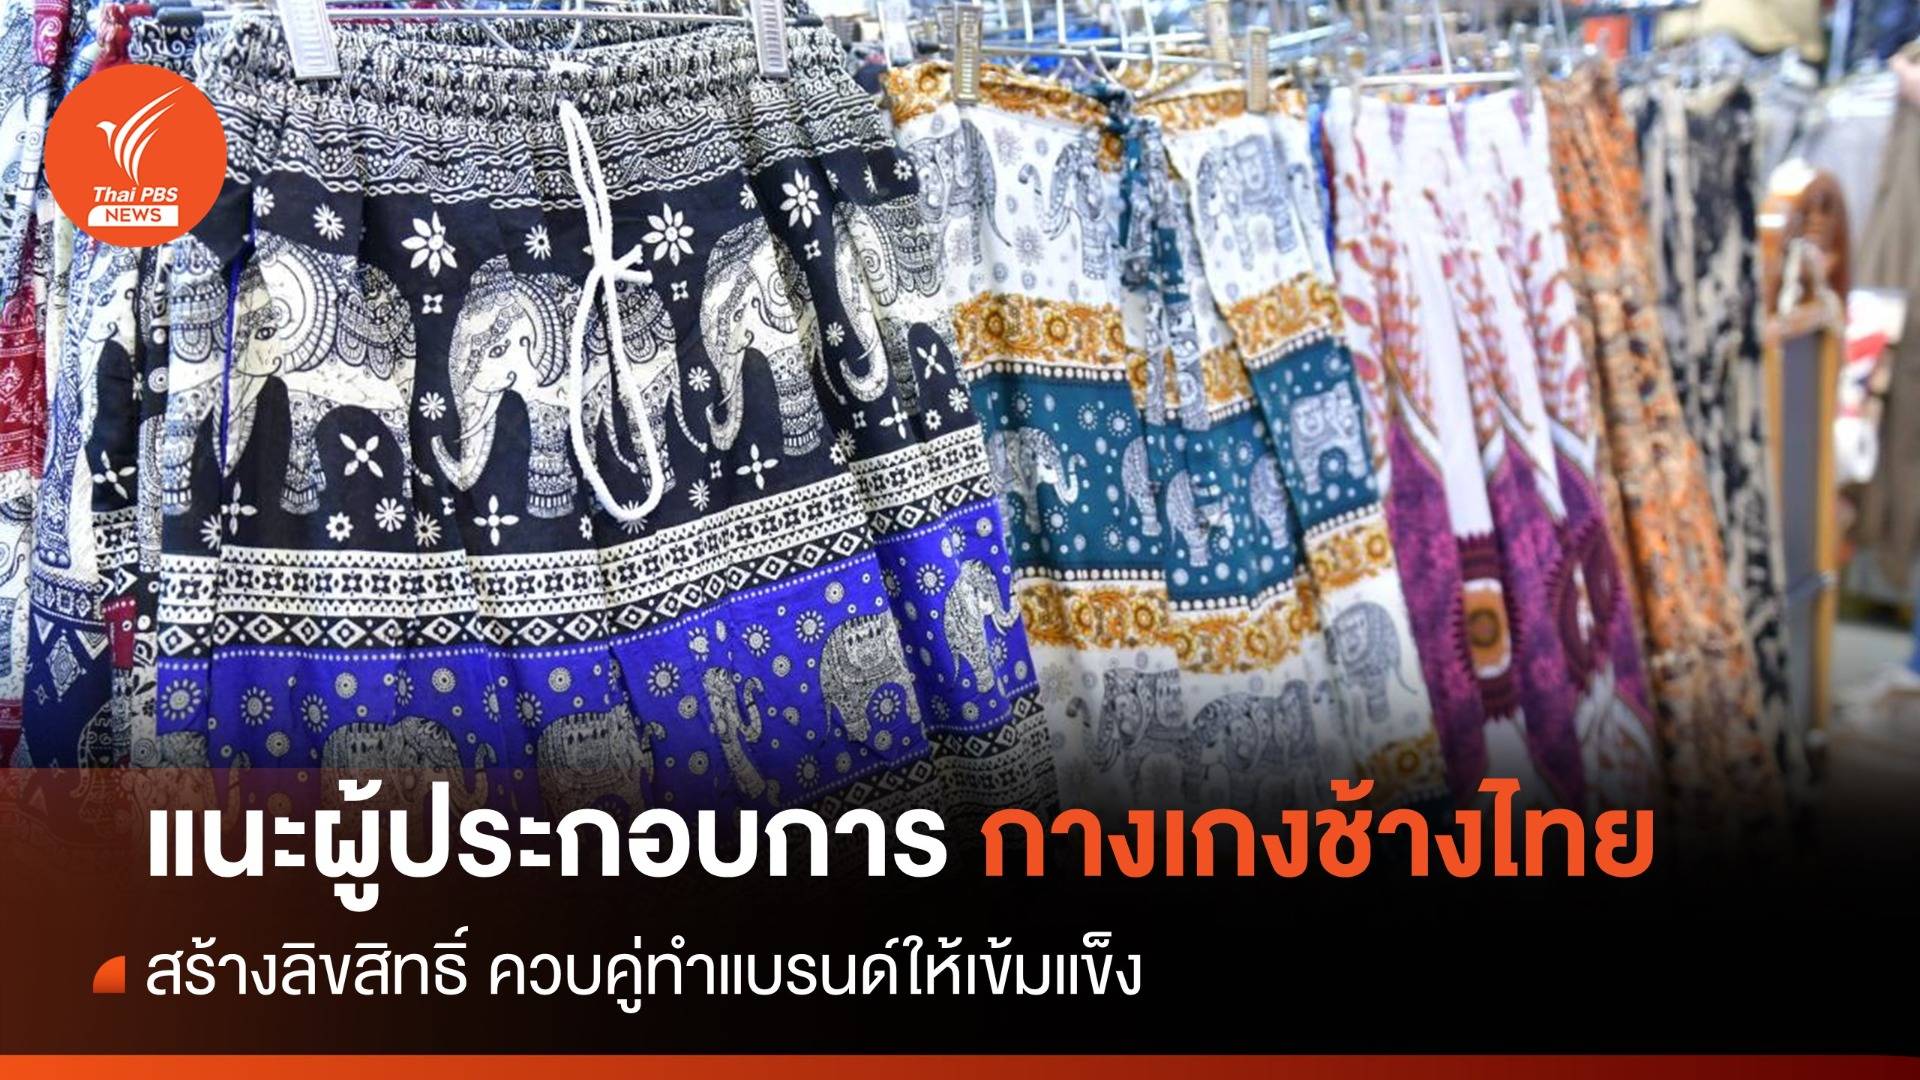 แนะผู้ประกอบการ "กางเกงช้างไทย" สร้างลิขสิทธิ์ ควบคู่ทำแบรนด์ให้เข้มแข็ง